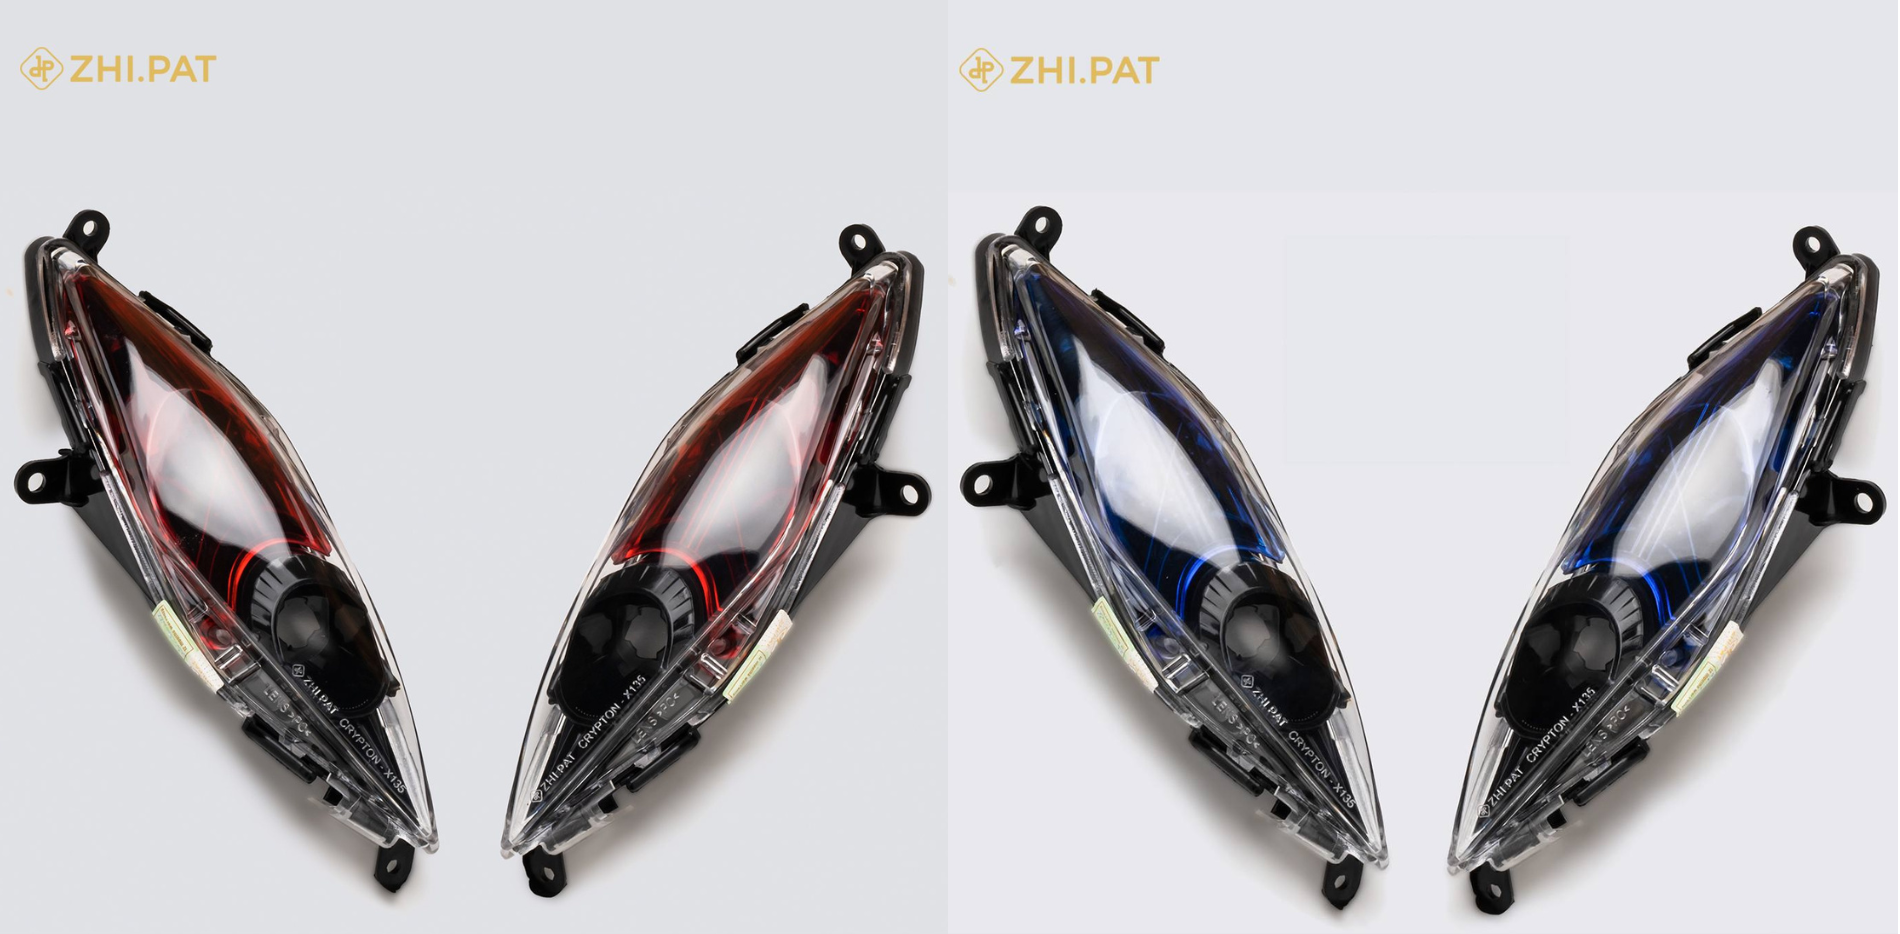 'Sờ tận tay' đèn xi nhan Zhi.Pat Crypton X135 đang gây sốt thị trường xe độ ZHI.PAT CRYPTON X135  (2).png